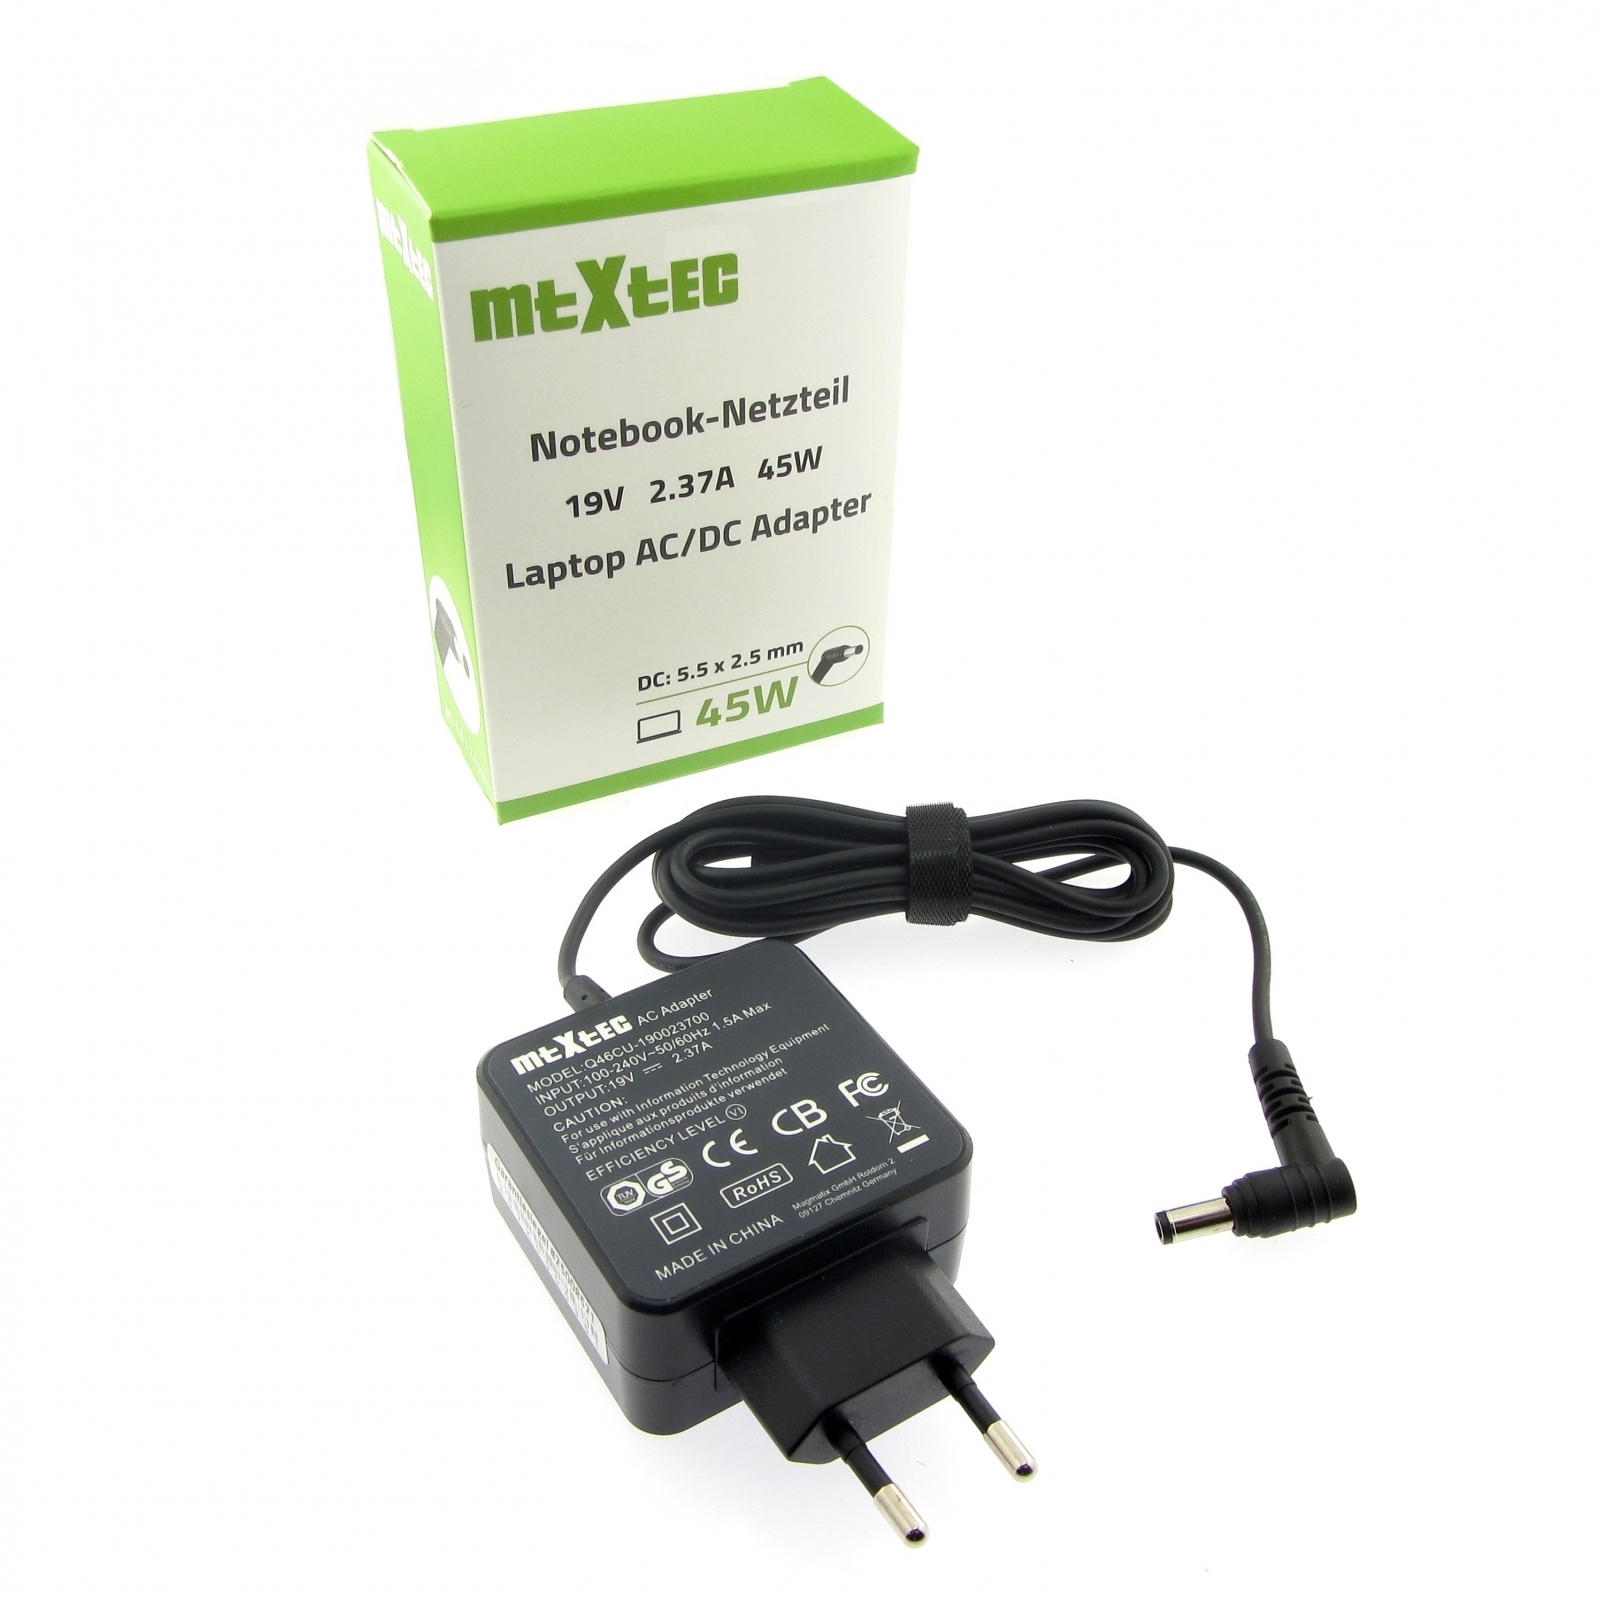 MTXTEC Netzteil, 19V, 2.37A Watt rund F551, 5.5 mm für 2.5 Stecker ASUS x Notebook-Netzteil 45